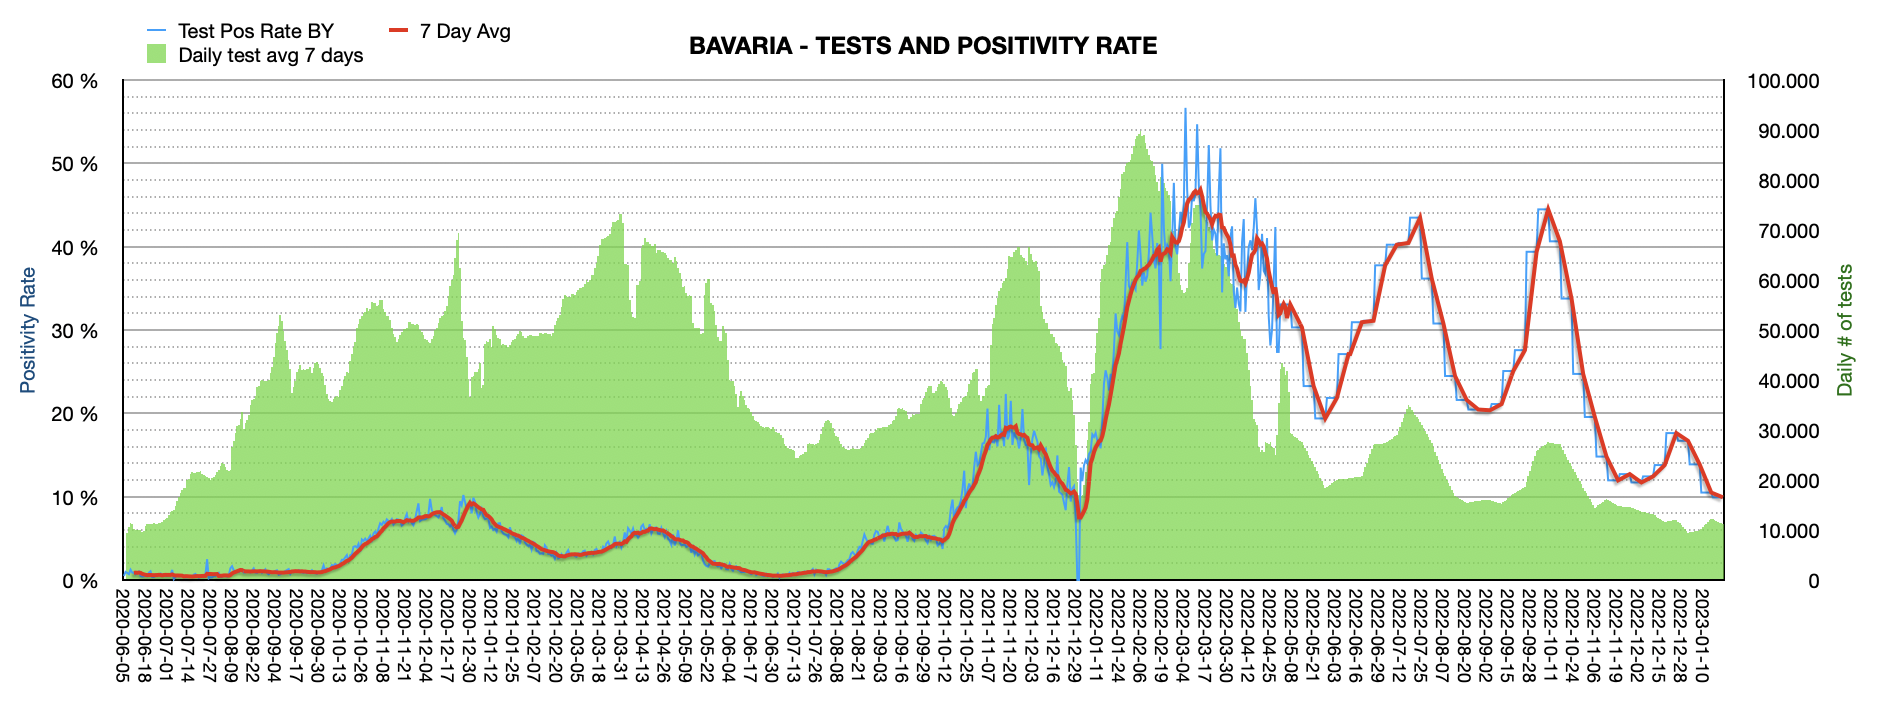 Grafik mit durchgeführten PCR Tests pro Tag in Bayern seit Juni 2020. Die Zahl der Tests pro Tag ist mit 11.173 ziemlich niedrig und weit vom Maximum von ca. 100.000 Tests/Tag entfernt. Die Positivrate sinkt auf jetzt 9,93%.